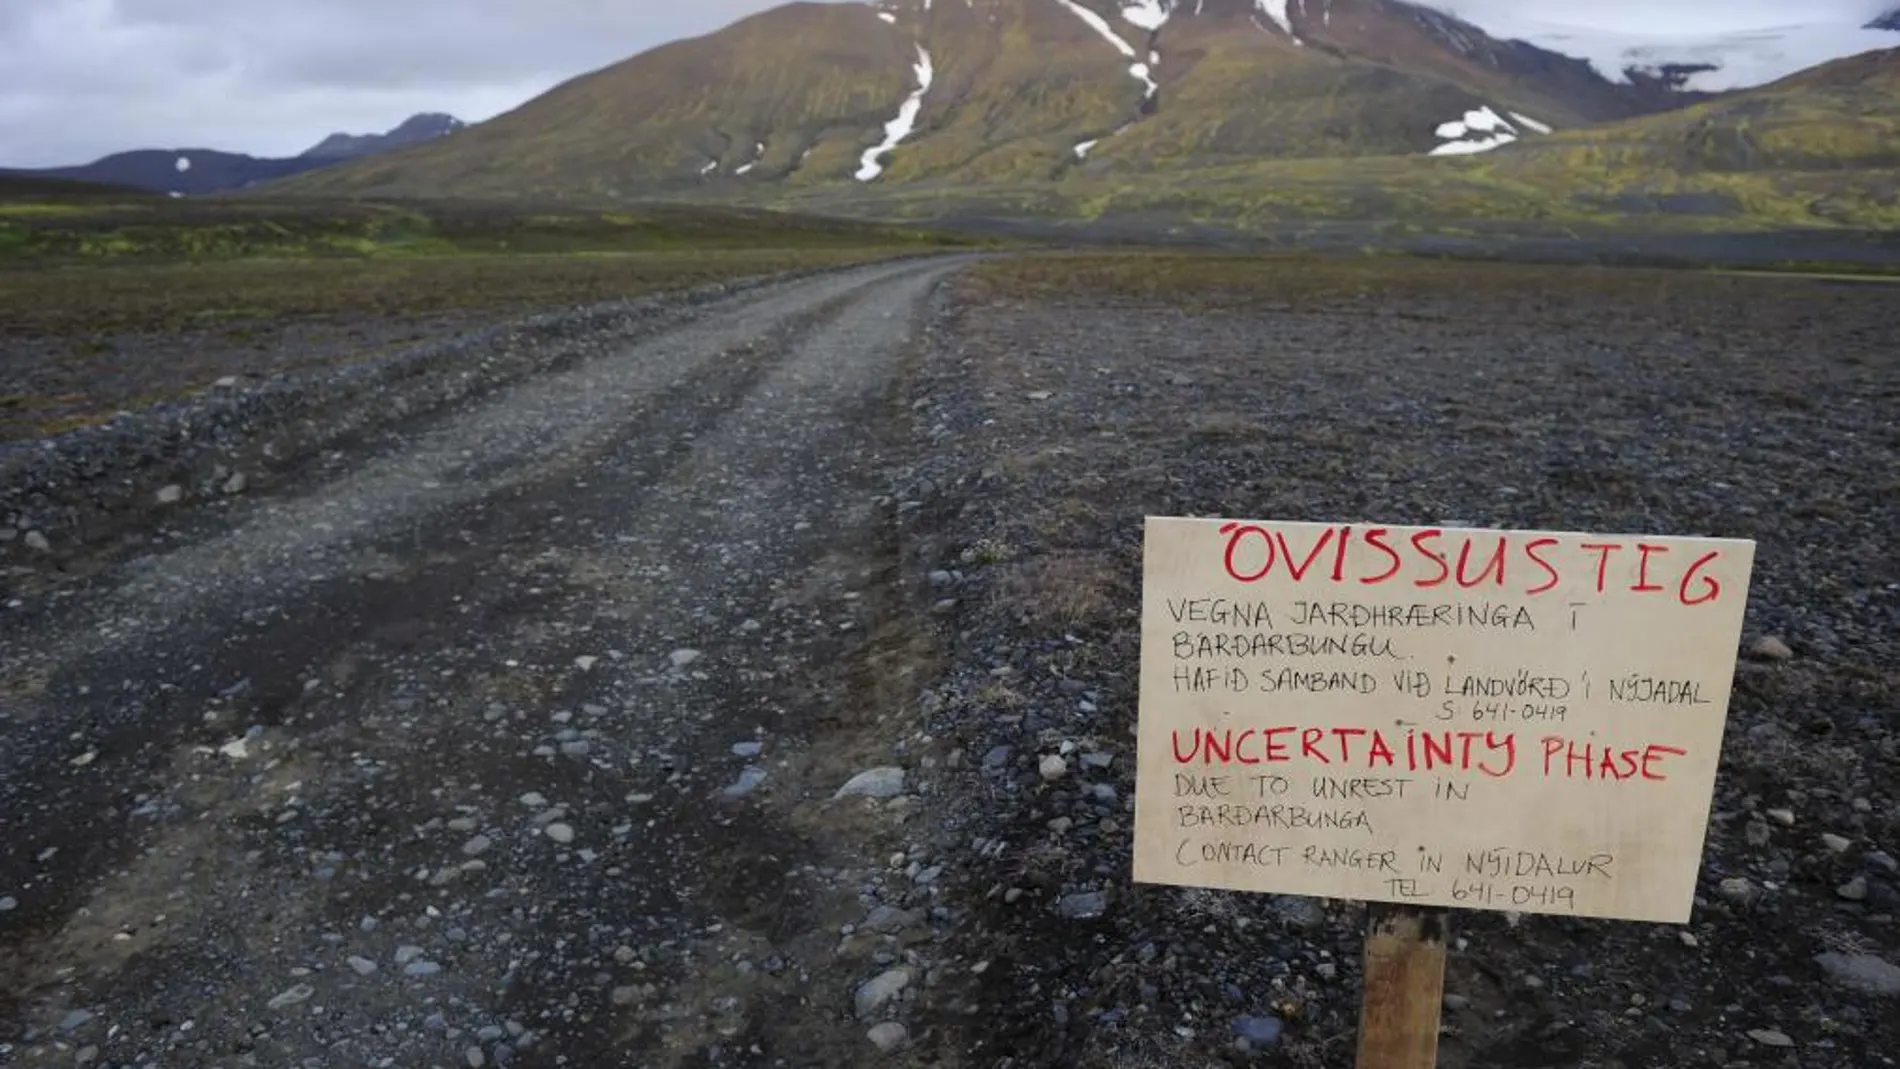 La carretera de acceso al volcán cortada por la amenaza de erupción